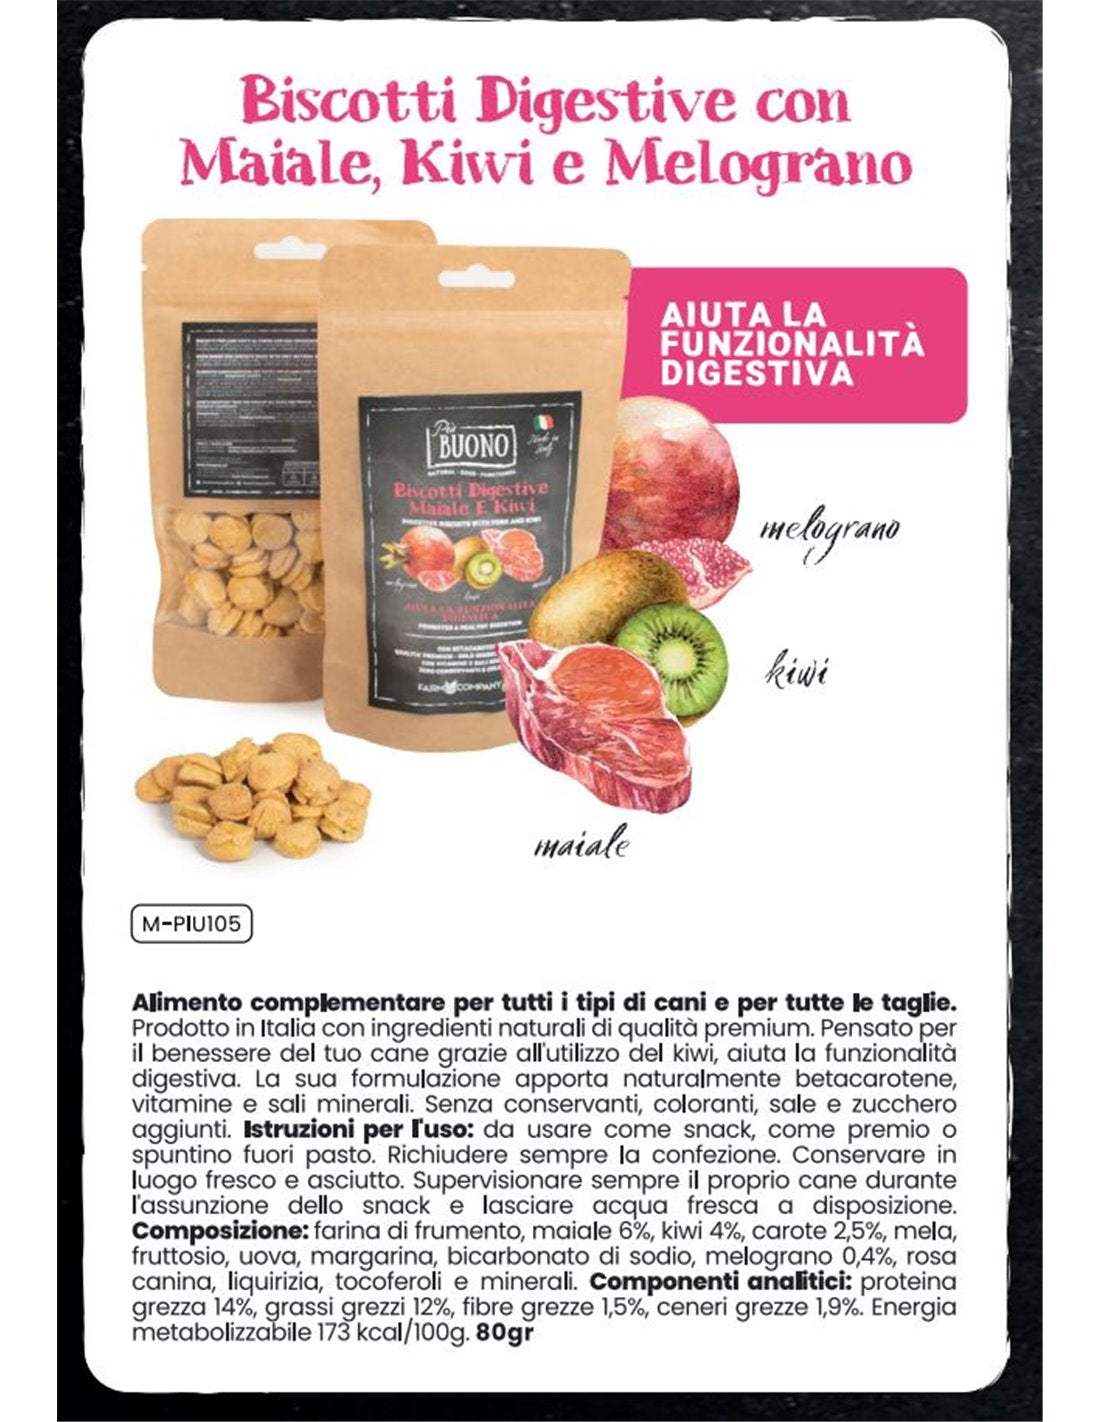 Biscotti Digestive - Maiale, Kiwi e Melograno